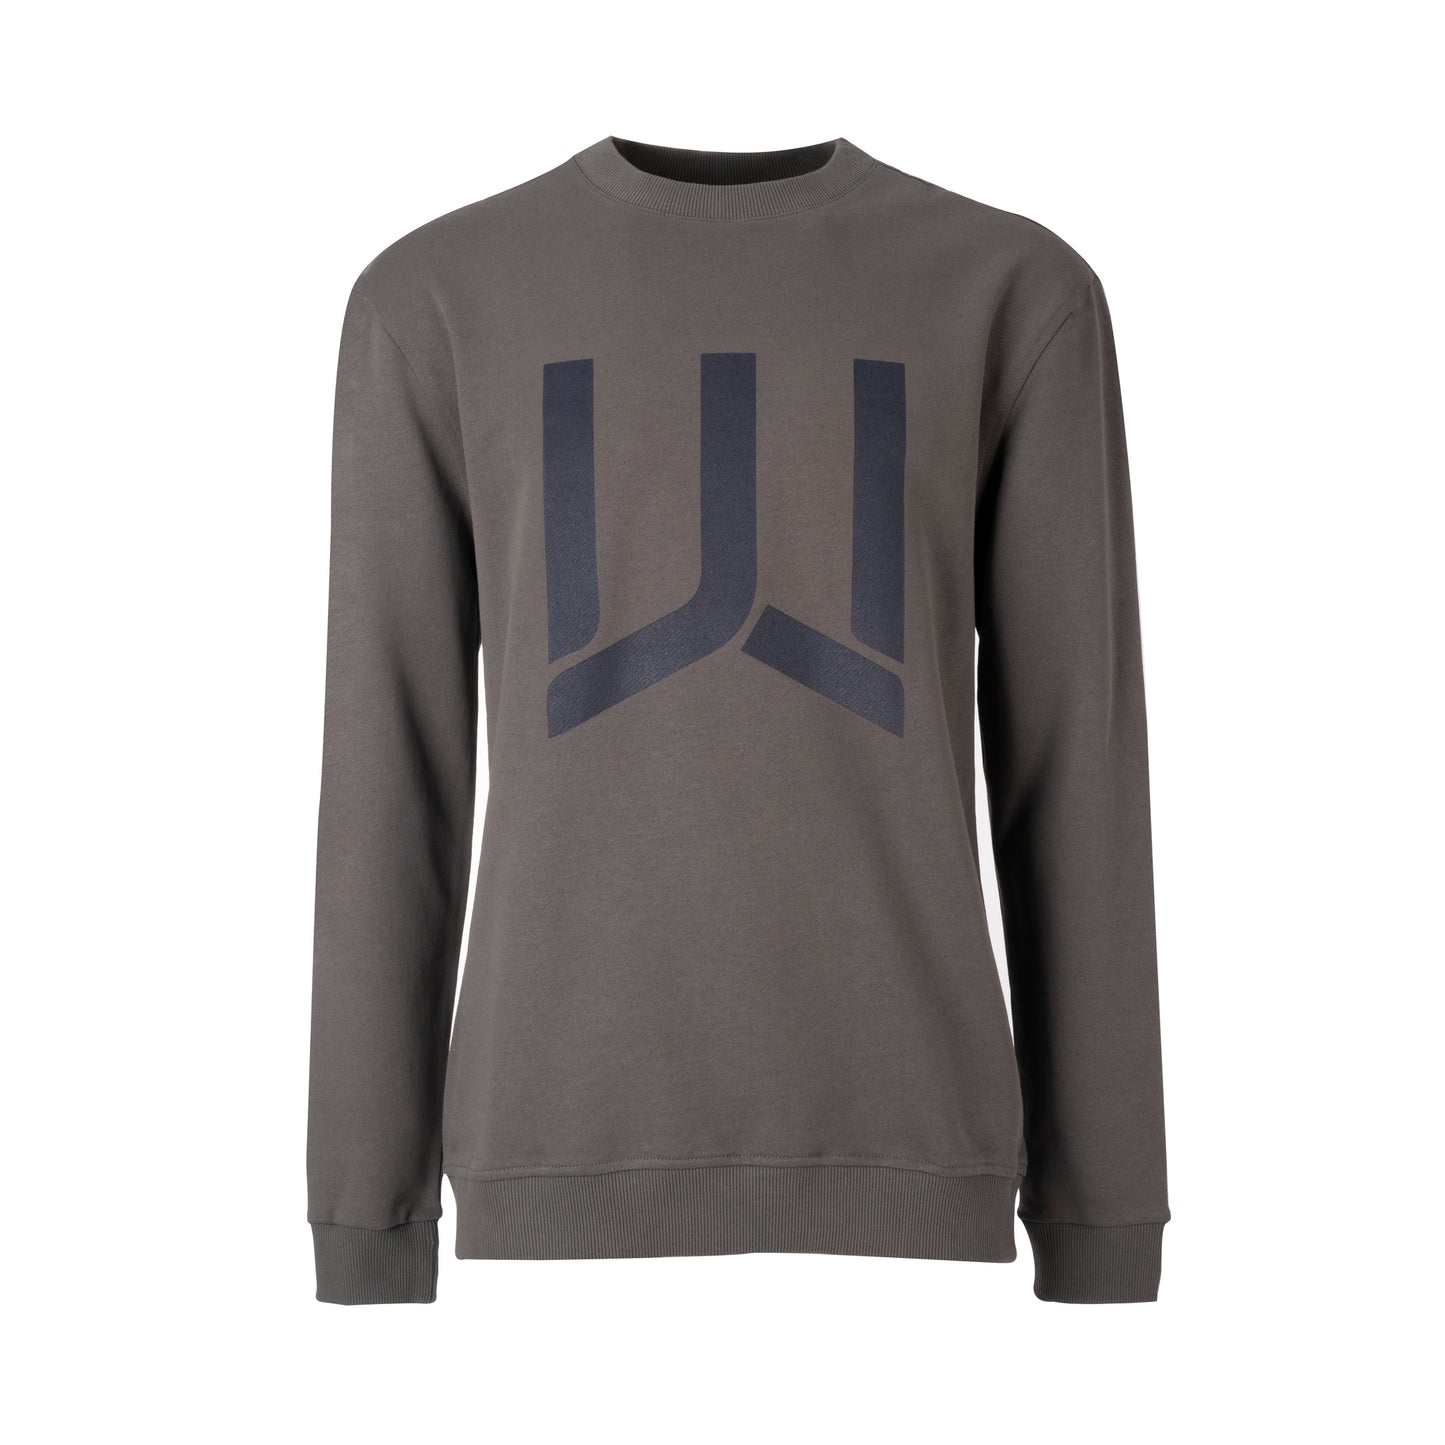 WOODS - Sweatshirt Big Logo - I migliori prodotti Made in Italy da Fiera di Monza Shop - Solo 99.90€! Acquista subito su Fiera di Monza Shop!